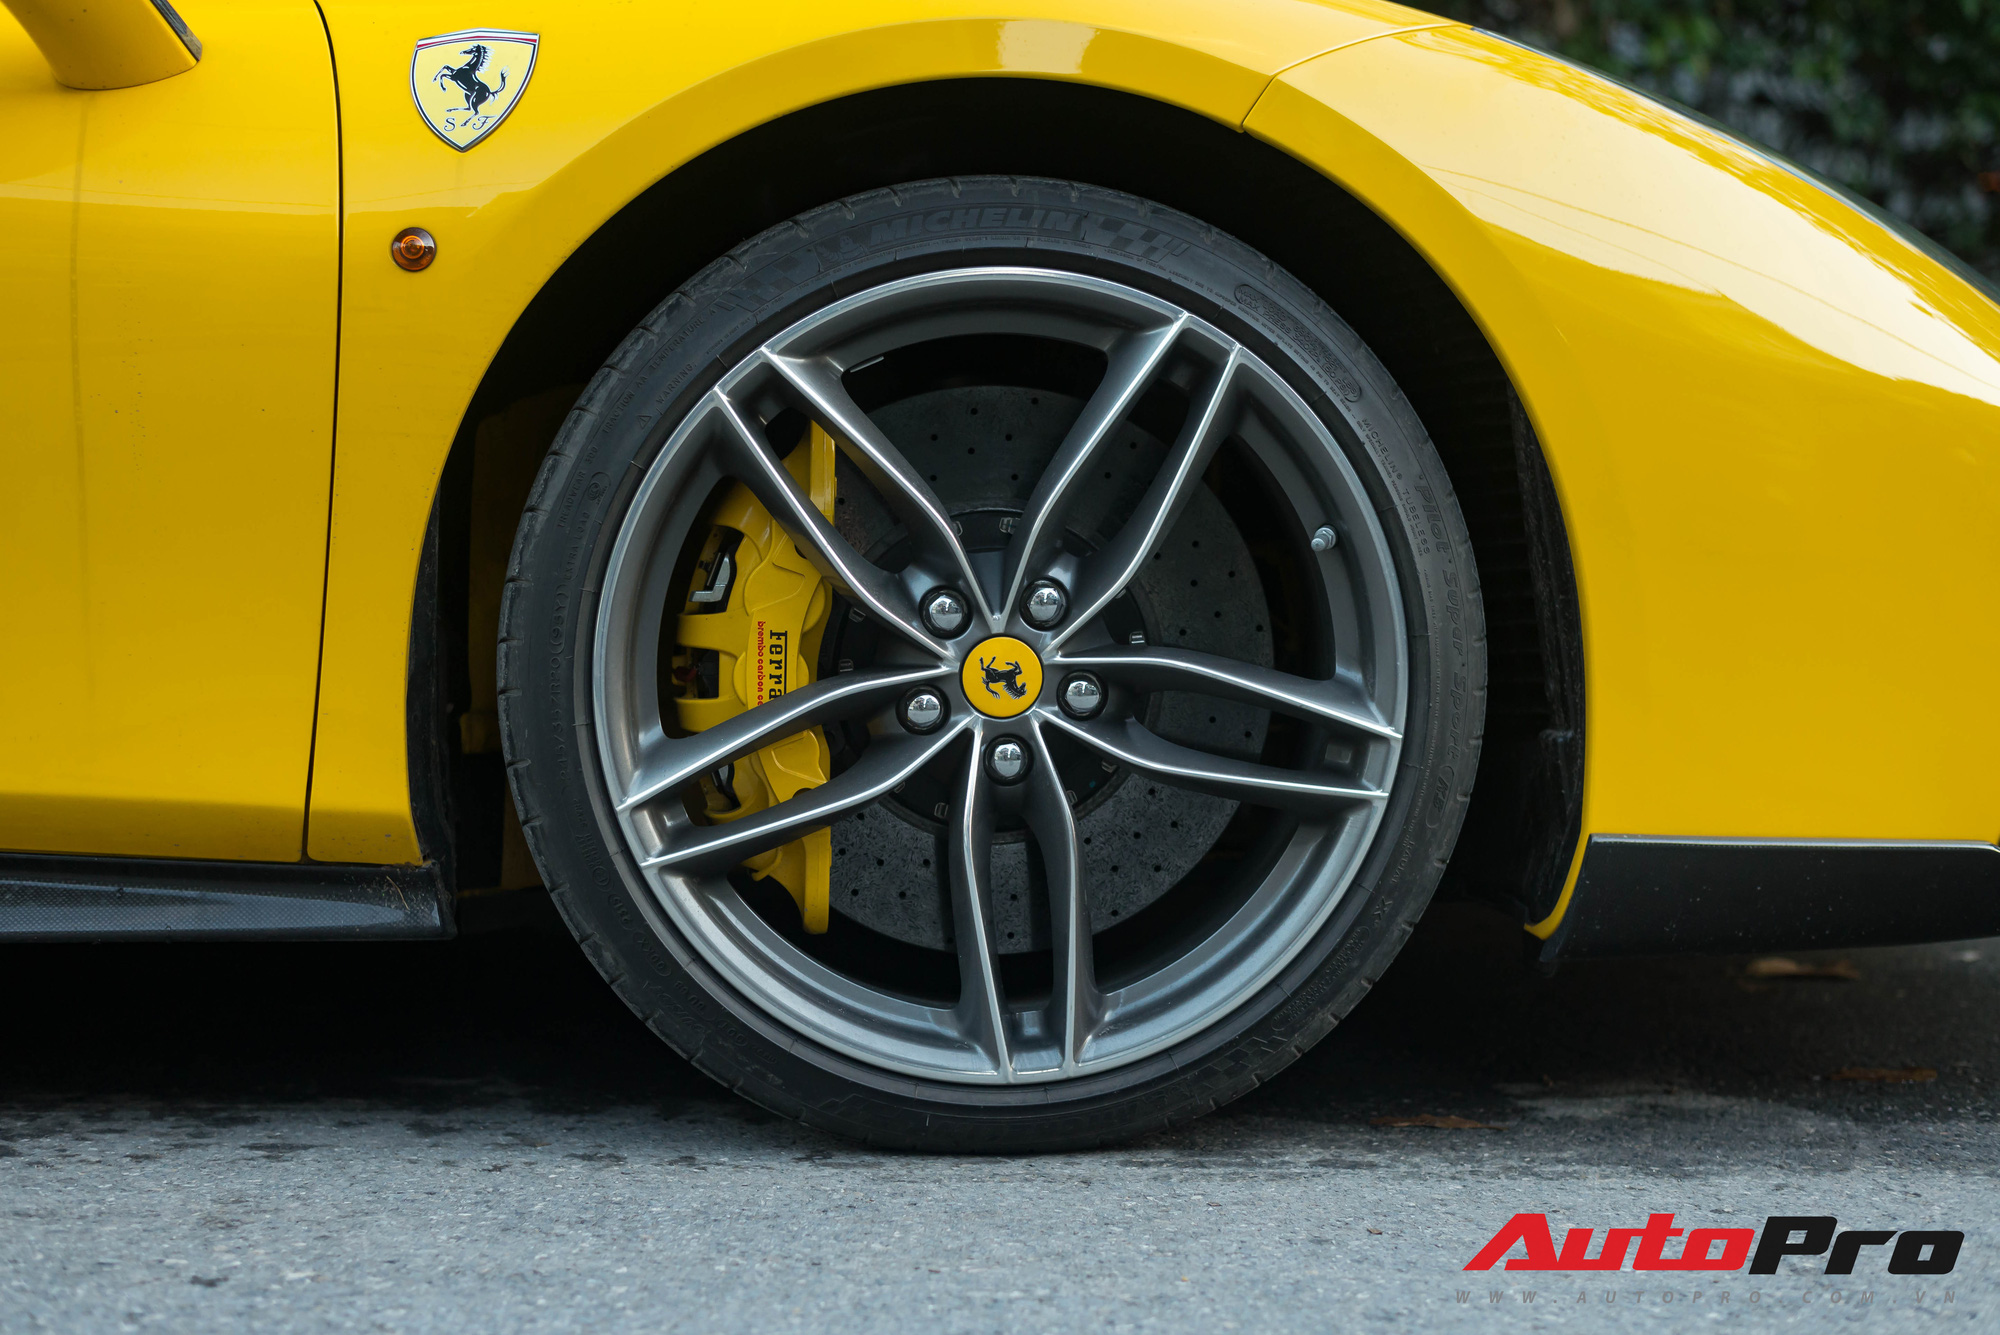 Bắt gặp Ferrari 488 GTB màu vàng độ bodykit Novitec Rosso trị giá hàng trăm triệu đồng tại Hà Nội - Ảnh 3.